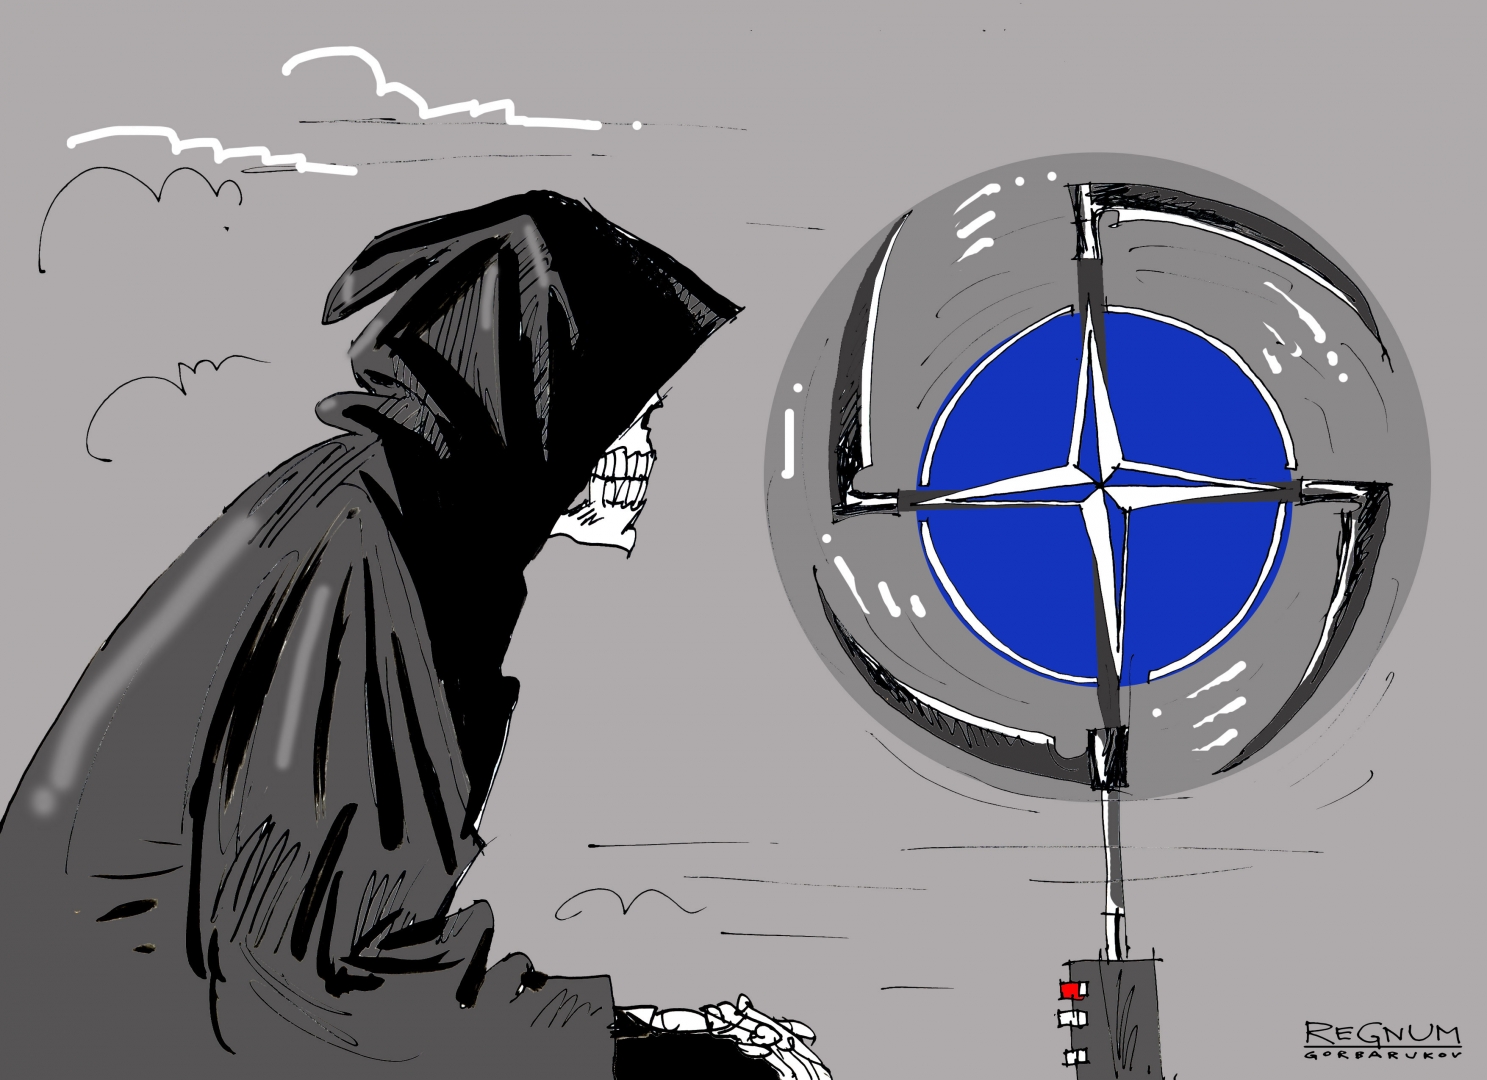 НАТО стремится к милитаризации Черноморского региона, заявил Шойгу